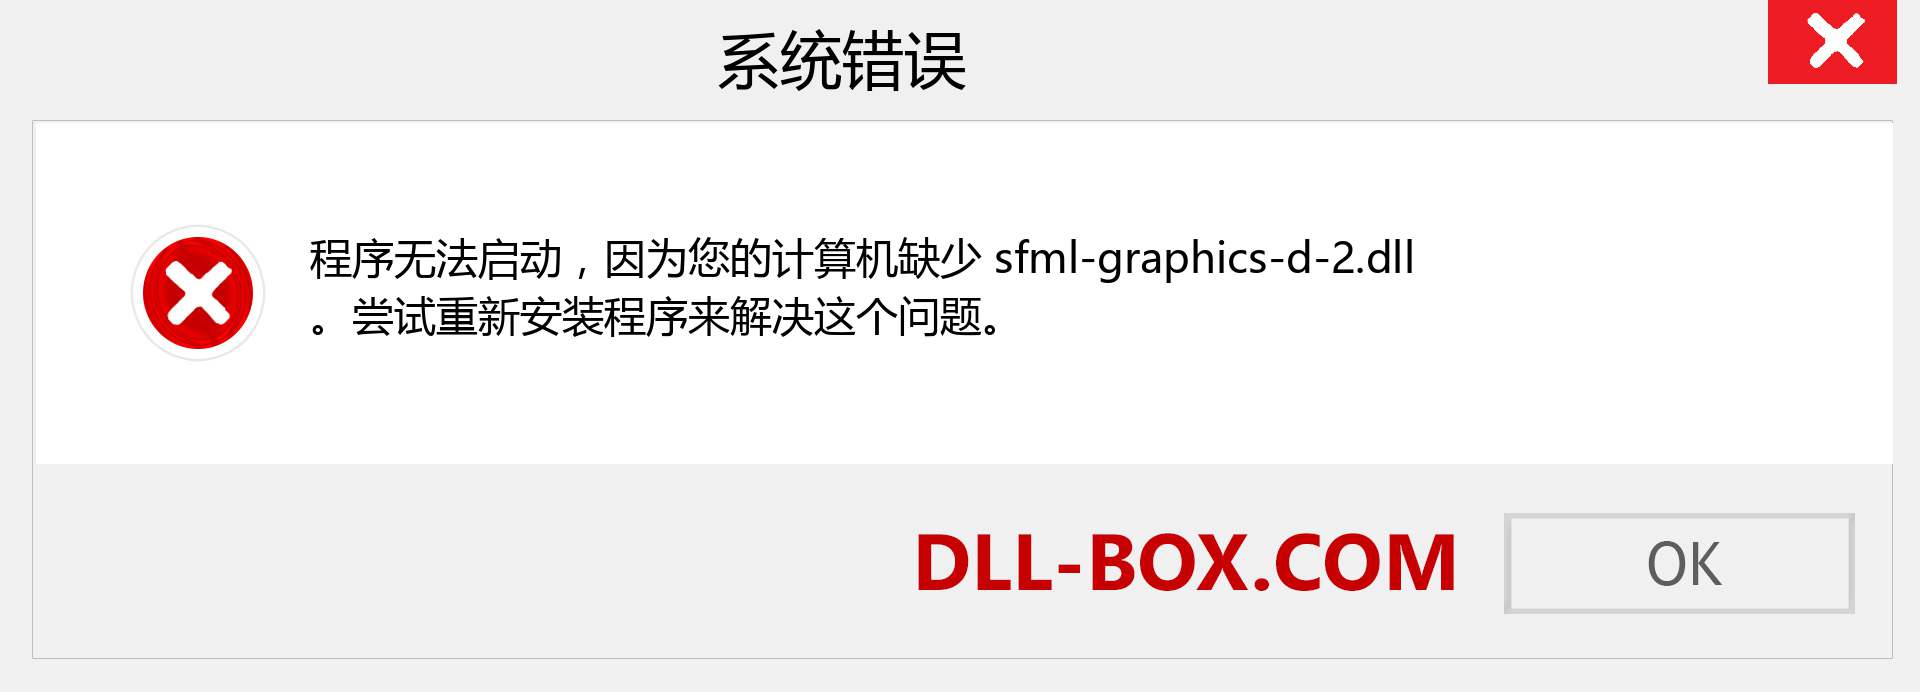 sfml-graphics-d-2.dll 文件丢失？。 适用于 Windows 7、8、10 的下载 - 修复 Windows、照片、图像上的 sfml-graphics-d-2 dll 丢失错误